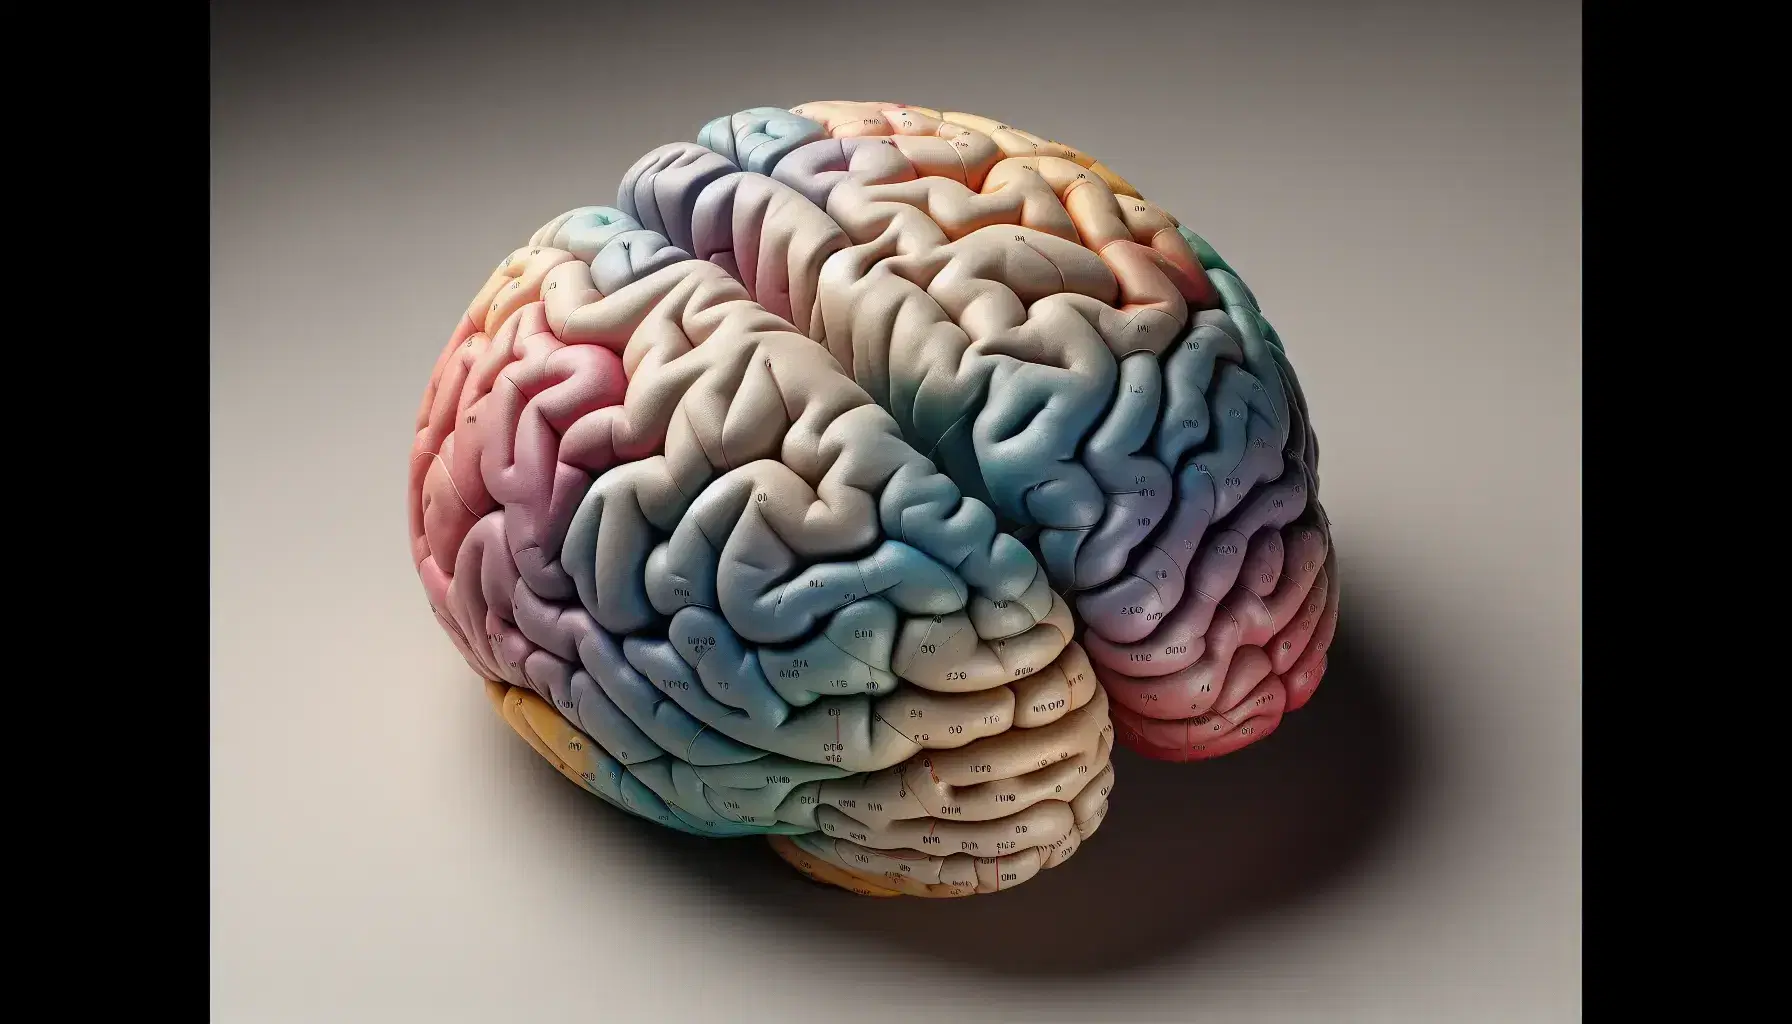 Modelo tridimensional del cerebro humano visto desde arriba, mostrando hemisferios cerebrales con textura arrugada y áreas funcionales en tonos suaves.